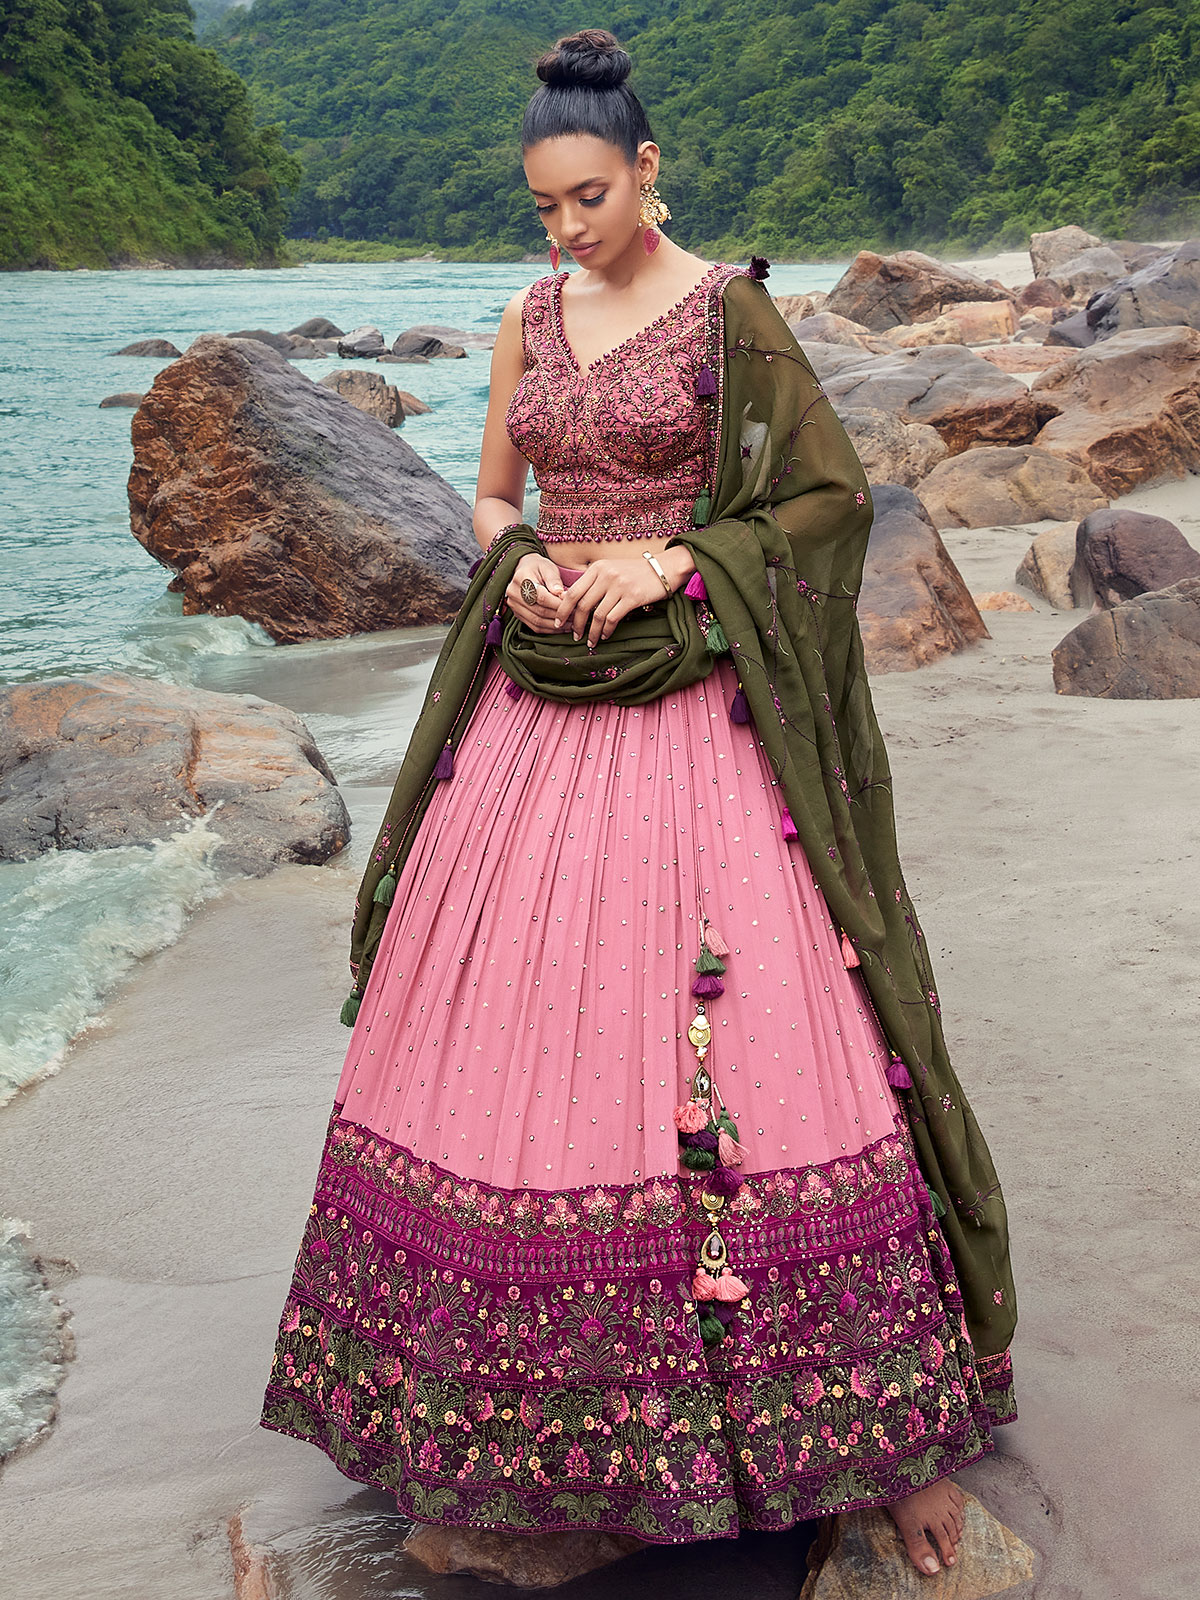 Exclusive Sangeet Wear Designer Pink Color Lehenga Choli In Crepe Fabr |  Lehenga choli, Pink lehenga, Nice dresses